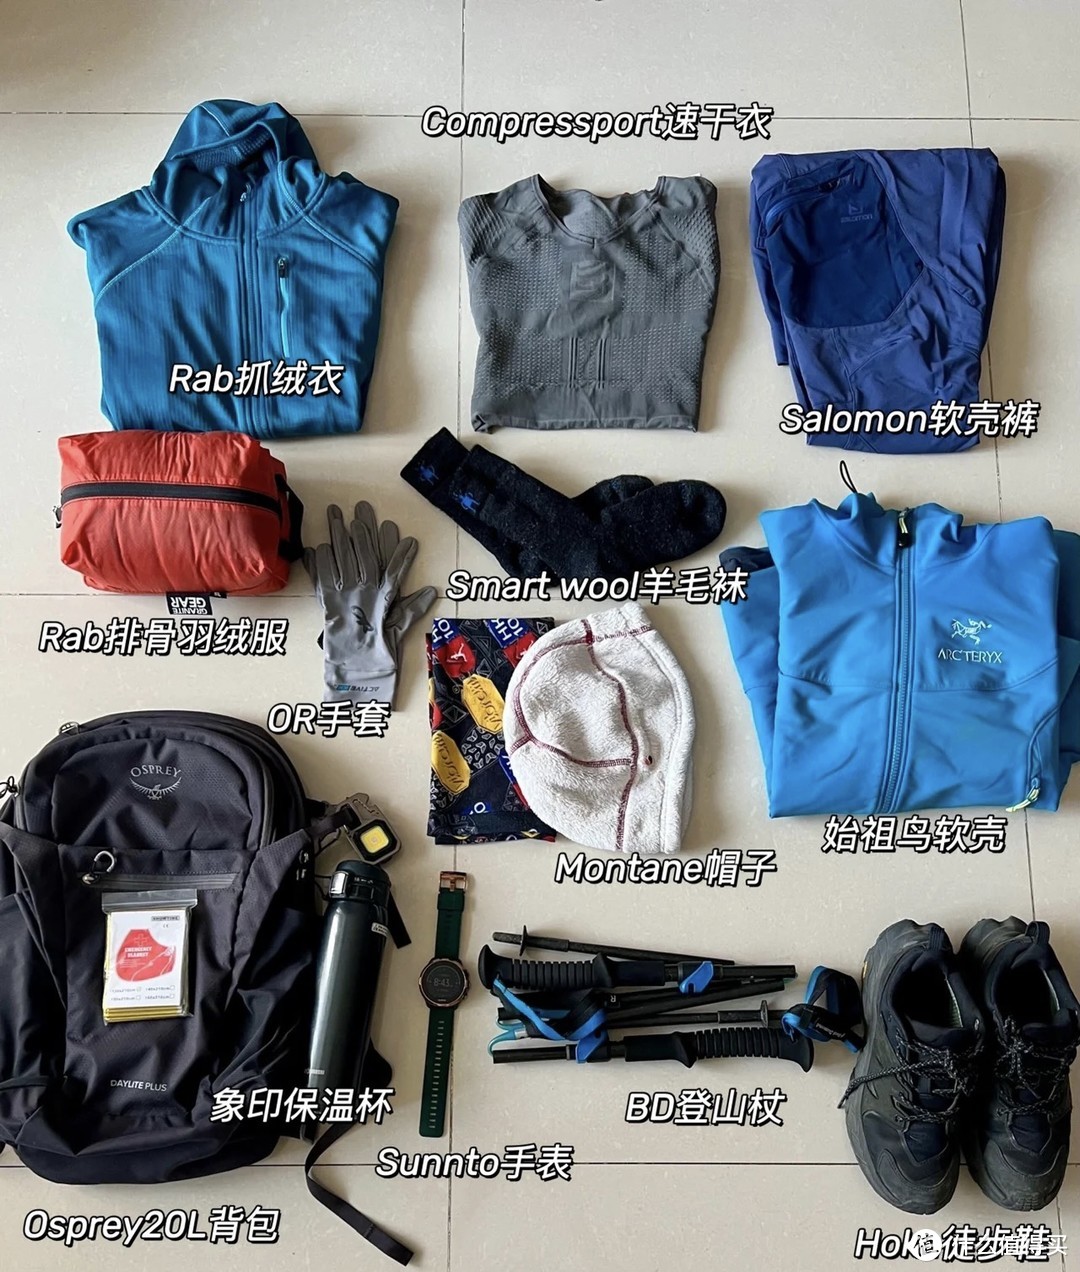 近200km的经验清单：户外徒步/登山，三层叠穿+全身装备